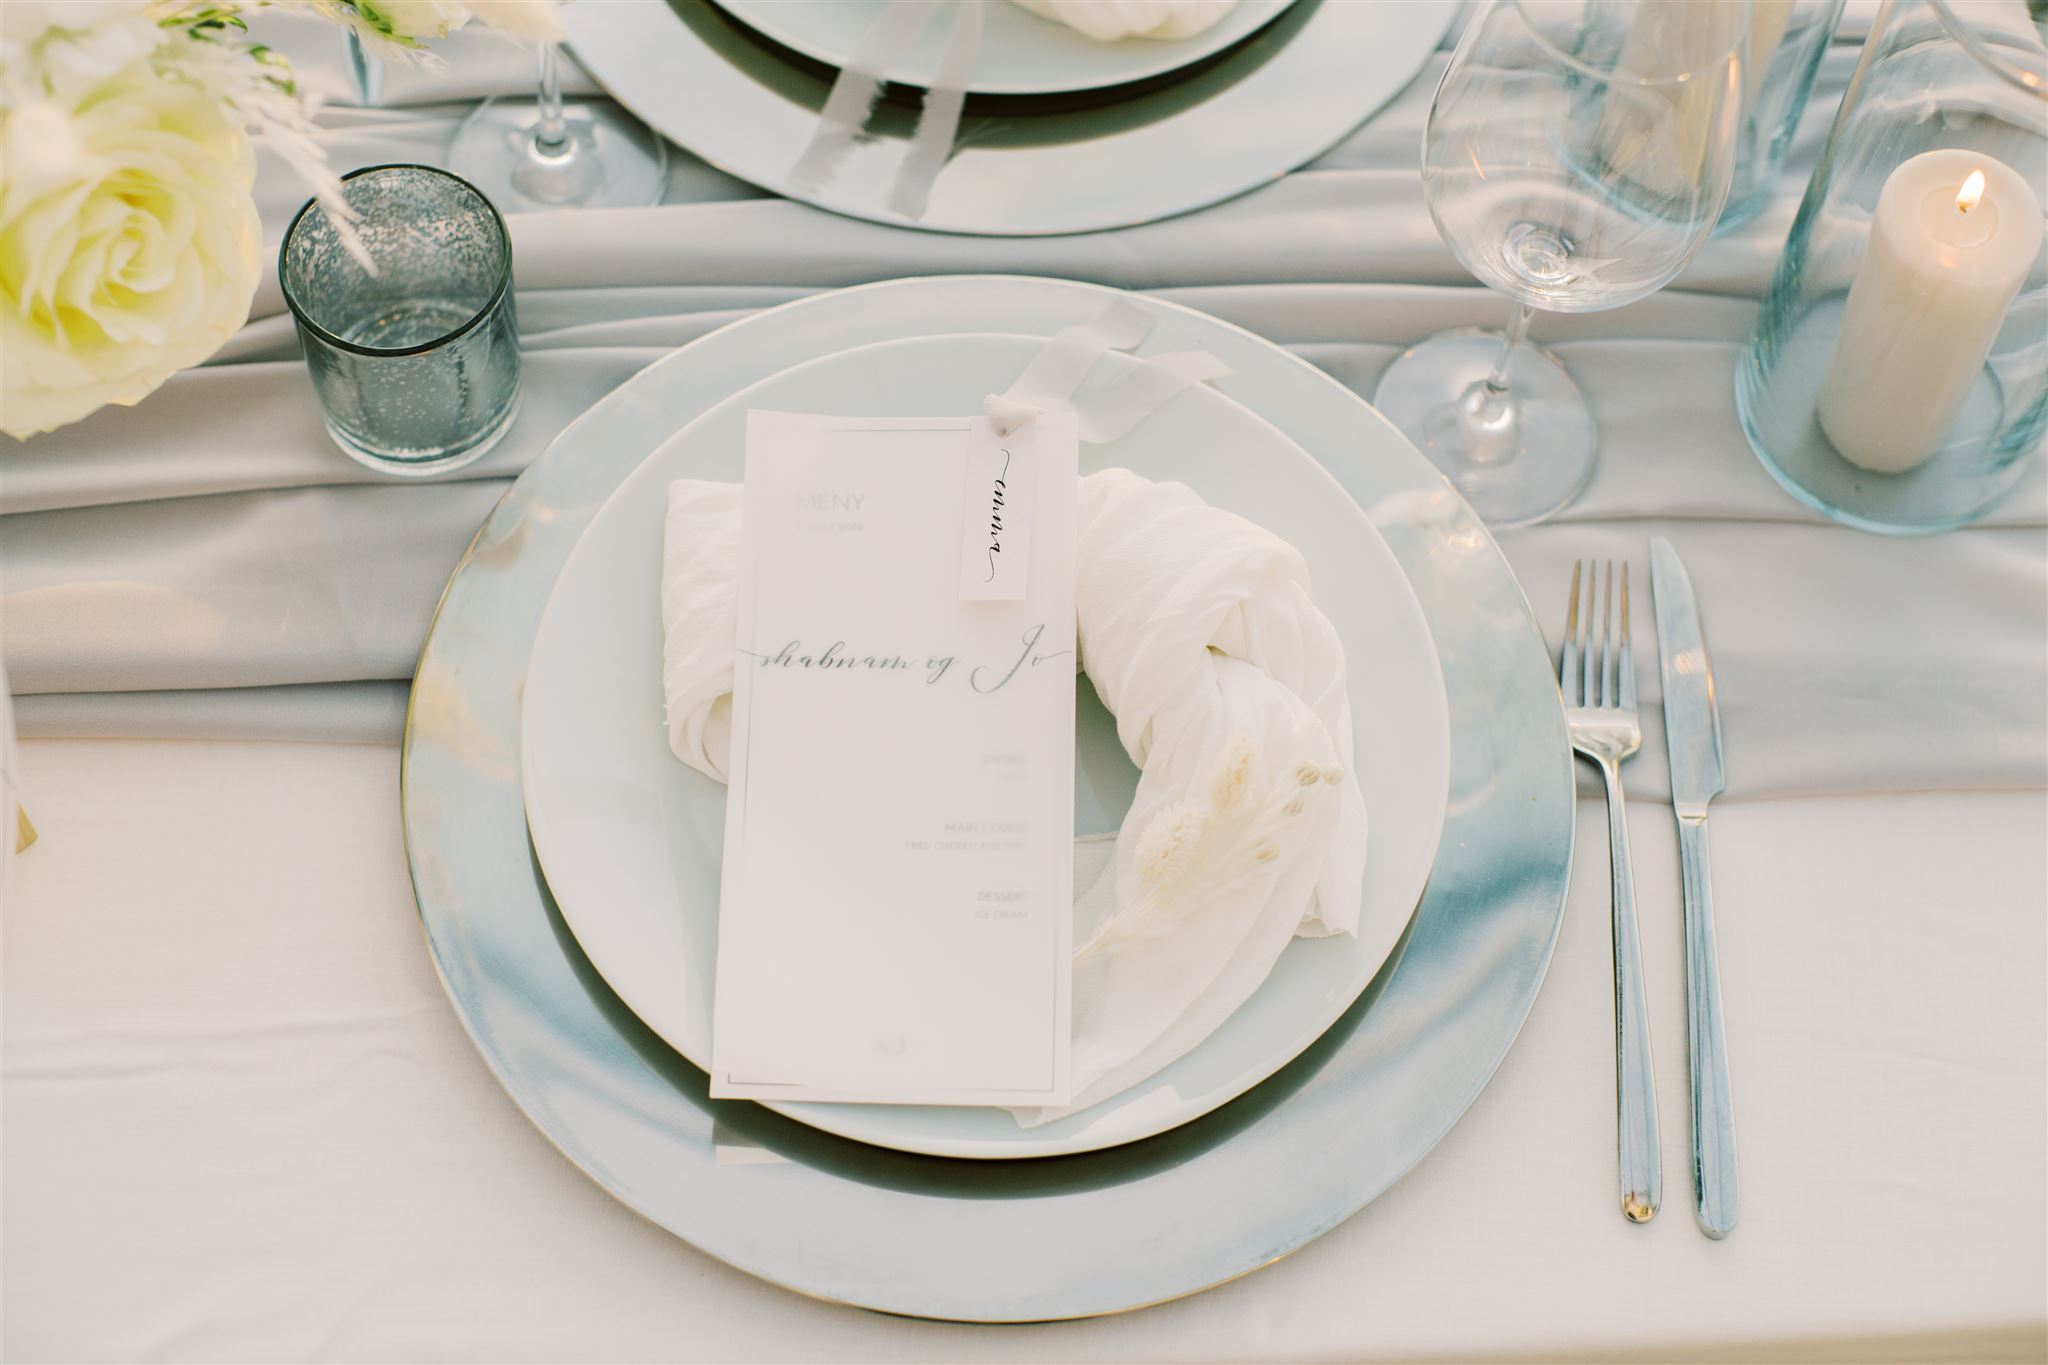 Moderne meny med grått silkebånd og grå løper til bordet med dekketallerken i sølv og hvite servietter.